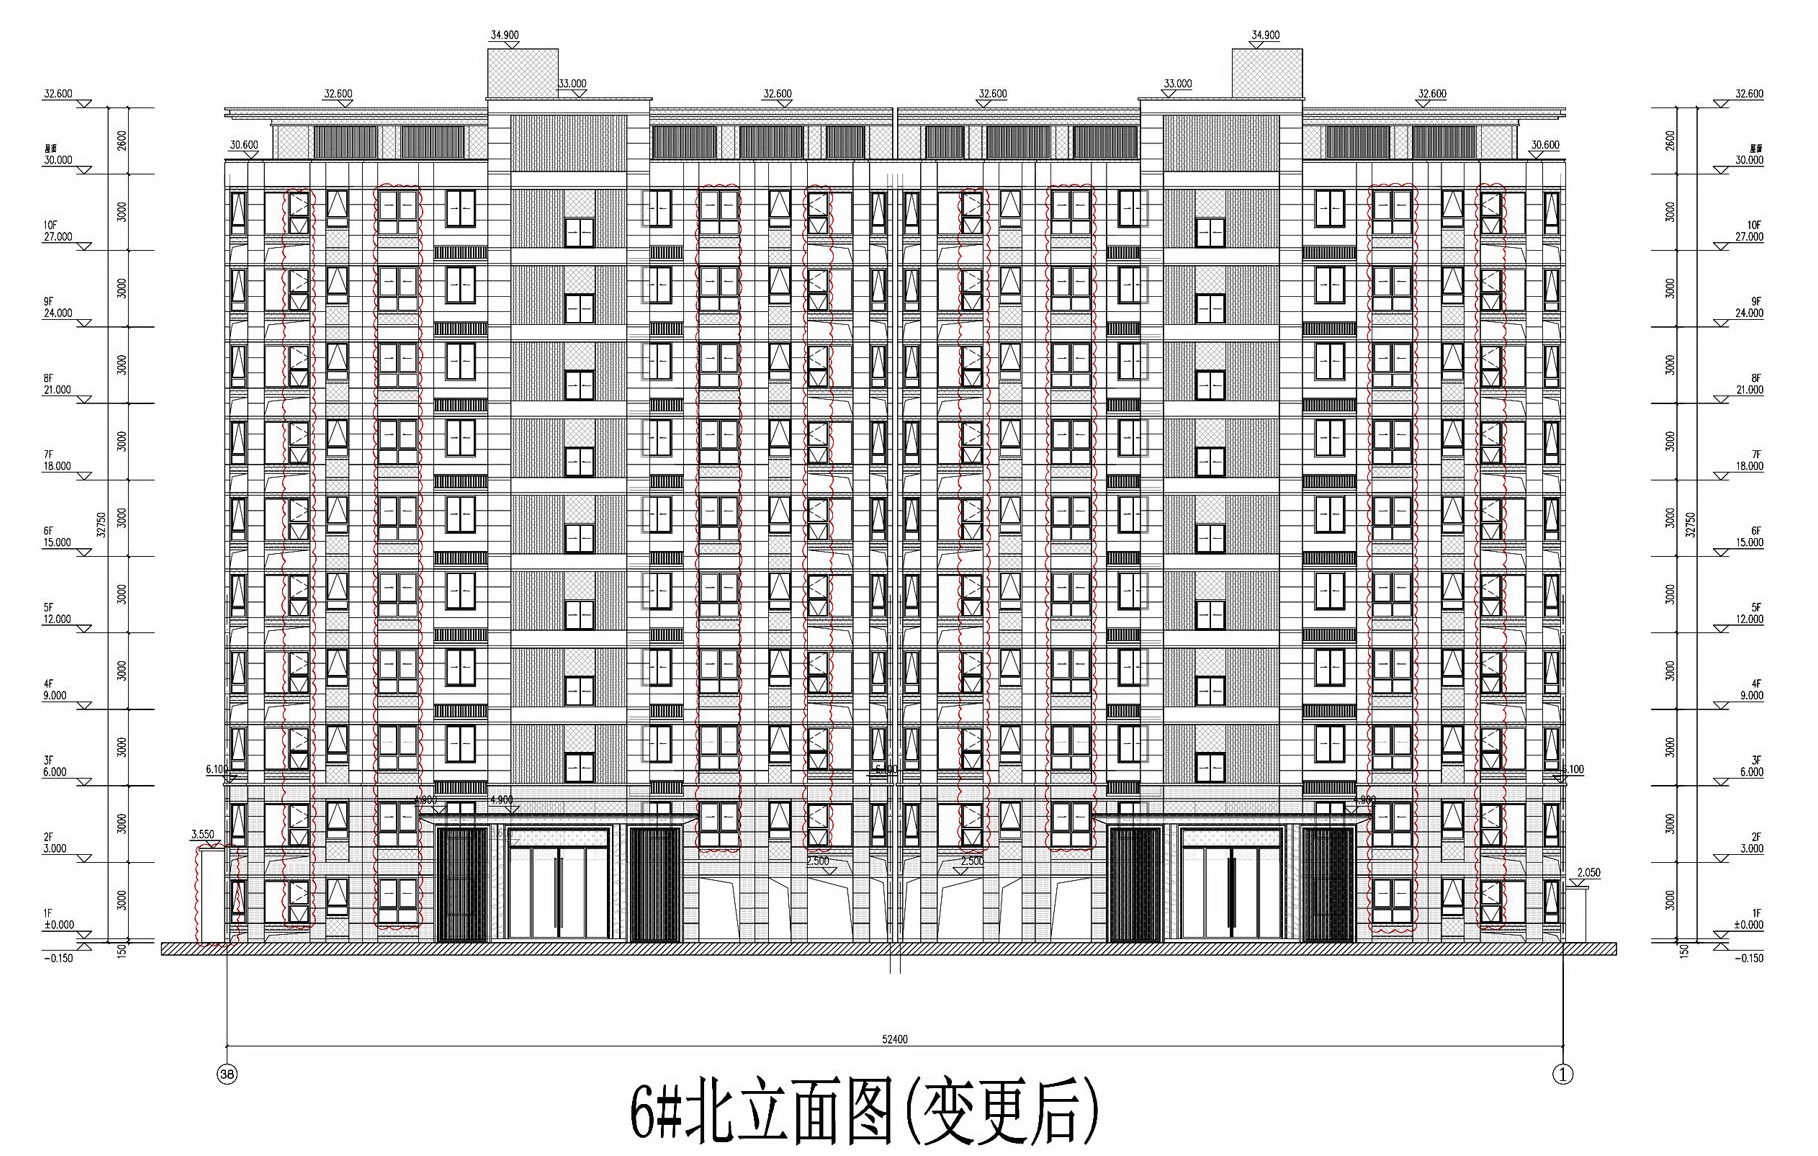 五矿DK20200104地块项目#6幢住宅楼北侧立面设计图_2022年3月4日规划方案变更后